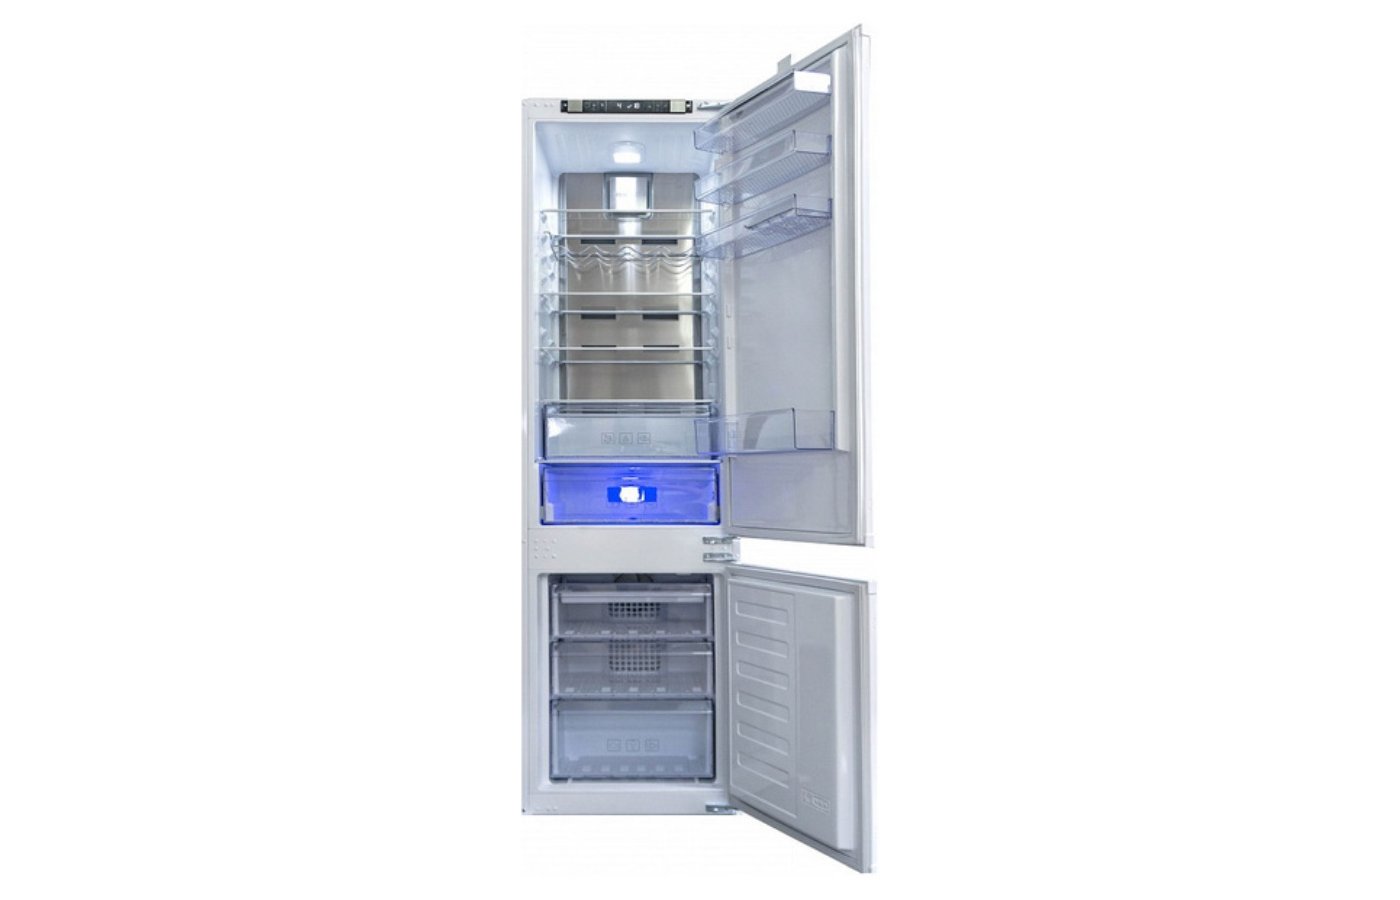 Beko bcna306e2s. Встраиваемый холодильник Beko bcna306e2s. Встроенный холодильник Beko bcna306e2s. Встраиваемый холодильник Beko bcna306e2s схема встраивания. Встраиваемый холодильник beko bcna275e2s